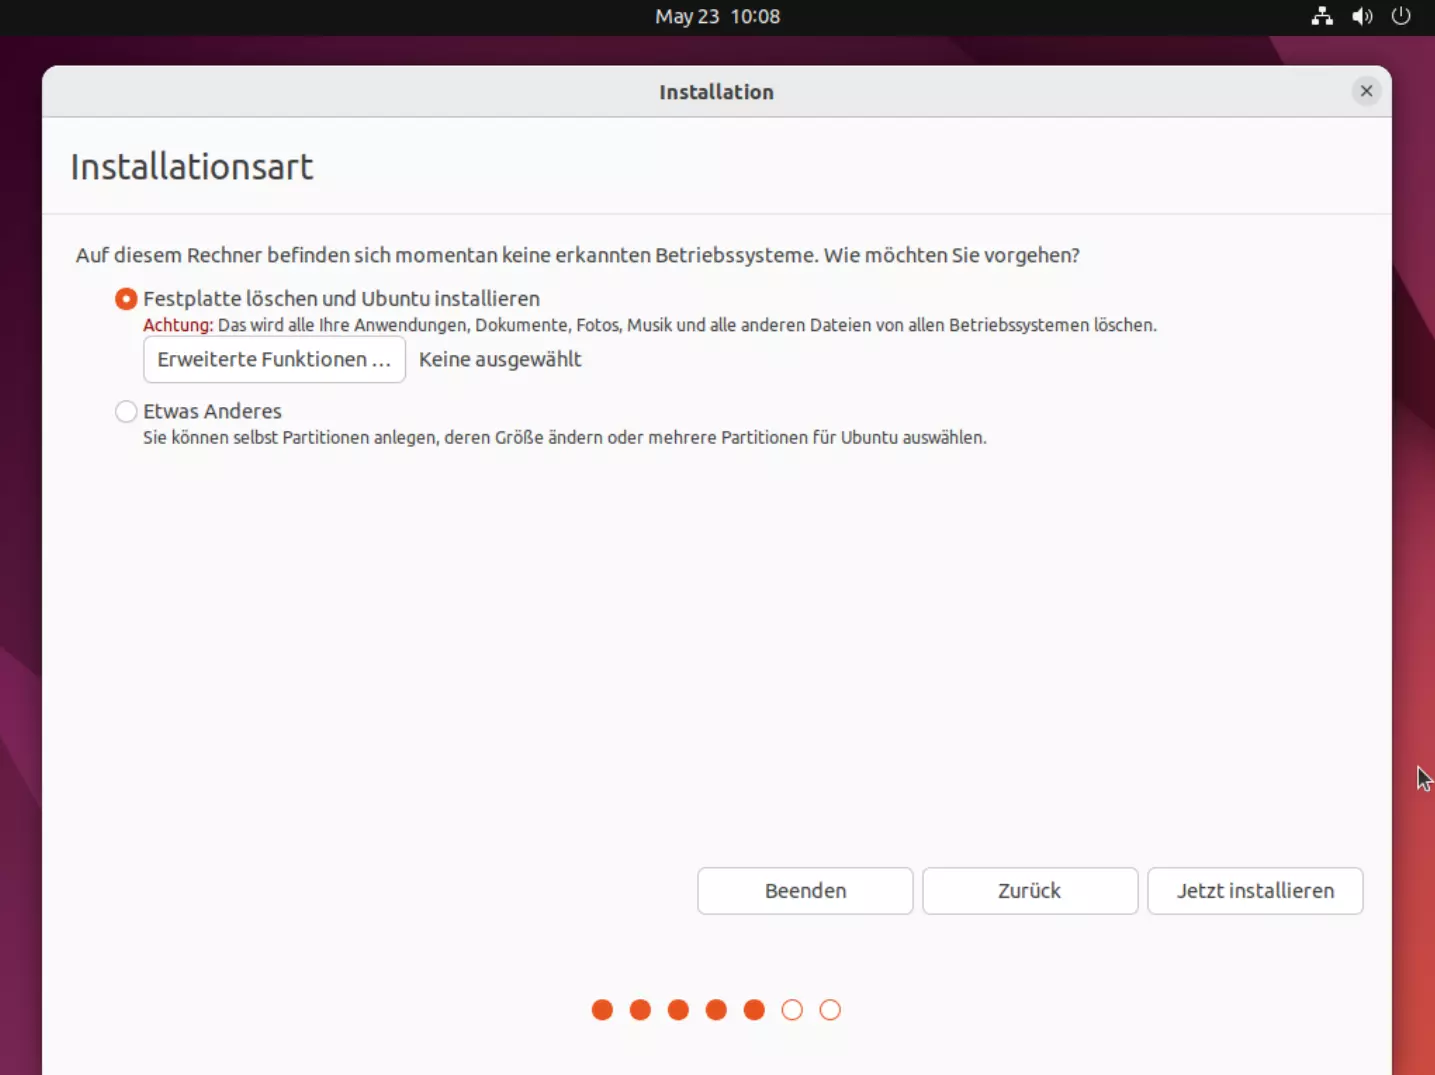 Festplatten für die Ubuntu-Installation 22.04 auswählen